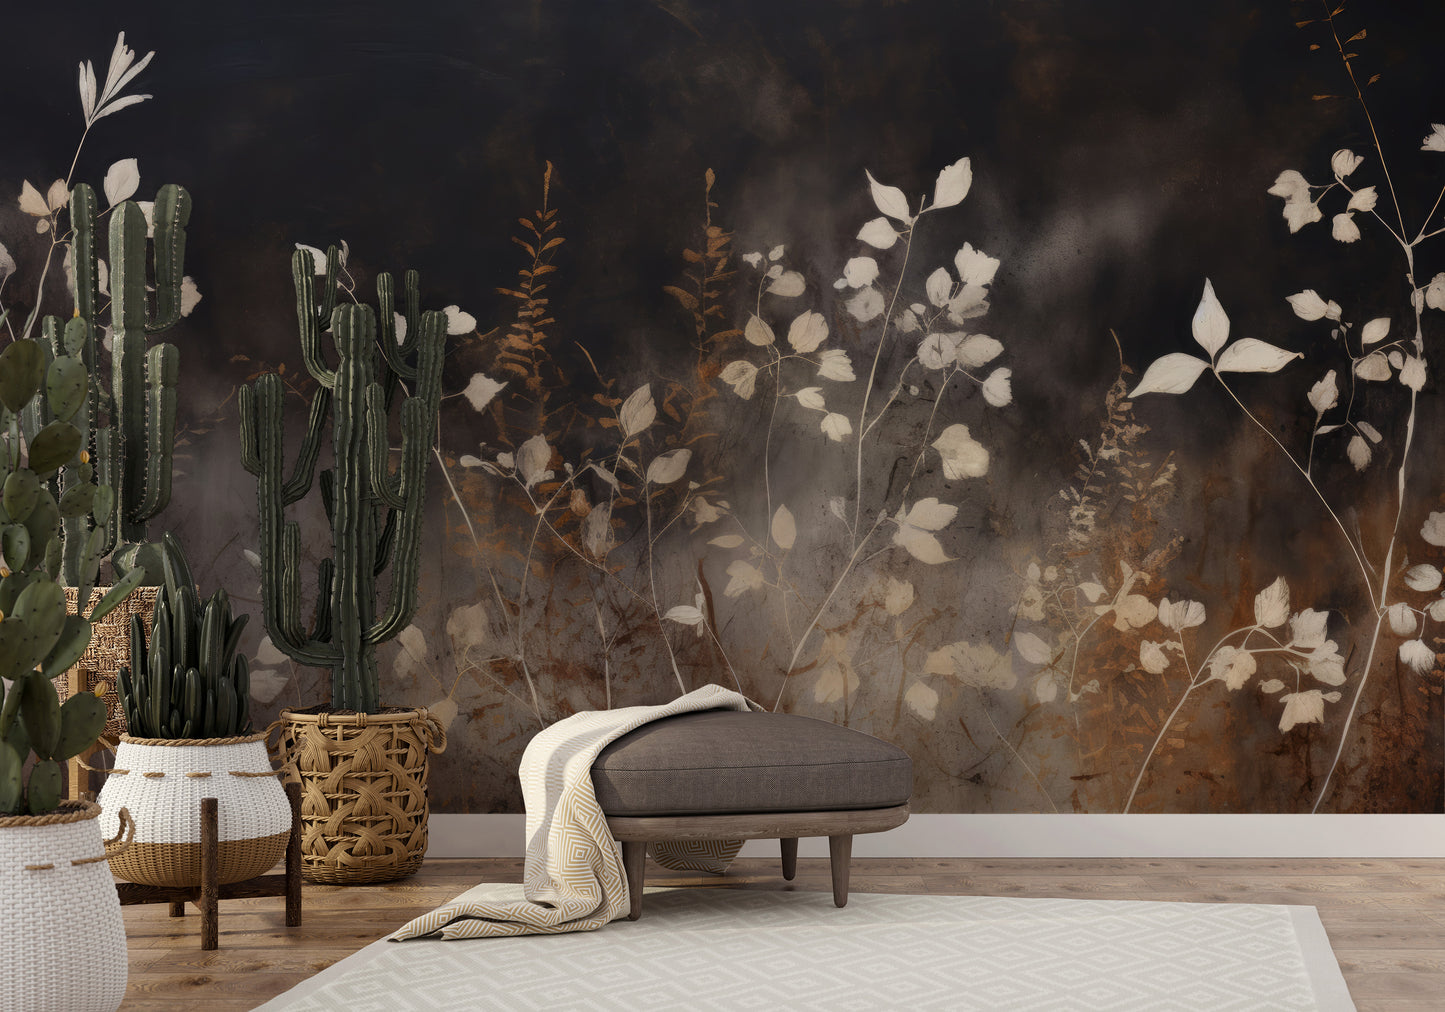 Wzór fototapety malowanej o nazwie Smokey Flora Elegance pokazanej w aranżacji wnętrza.